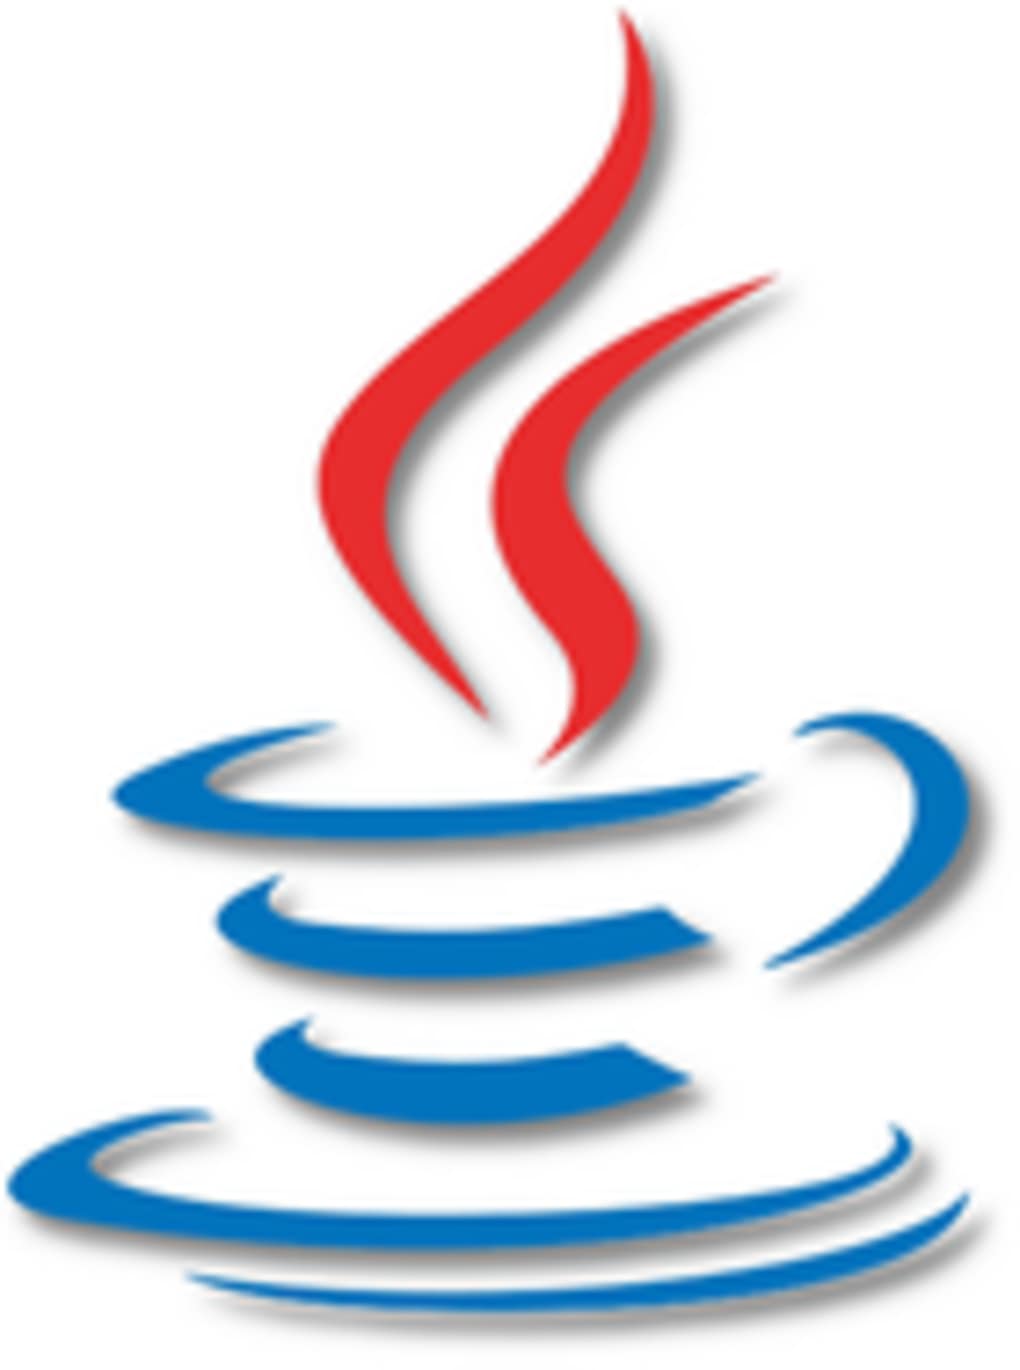 Java 6 legacy download mac torrent